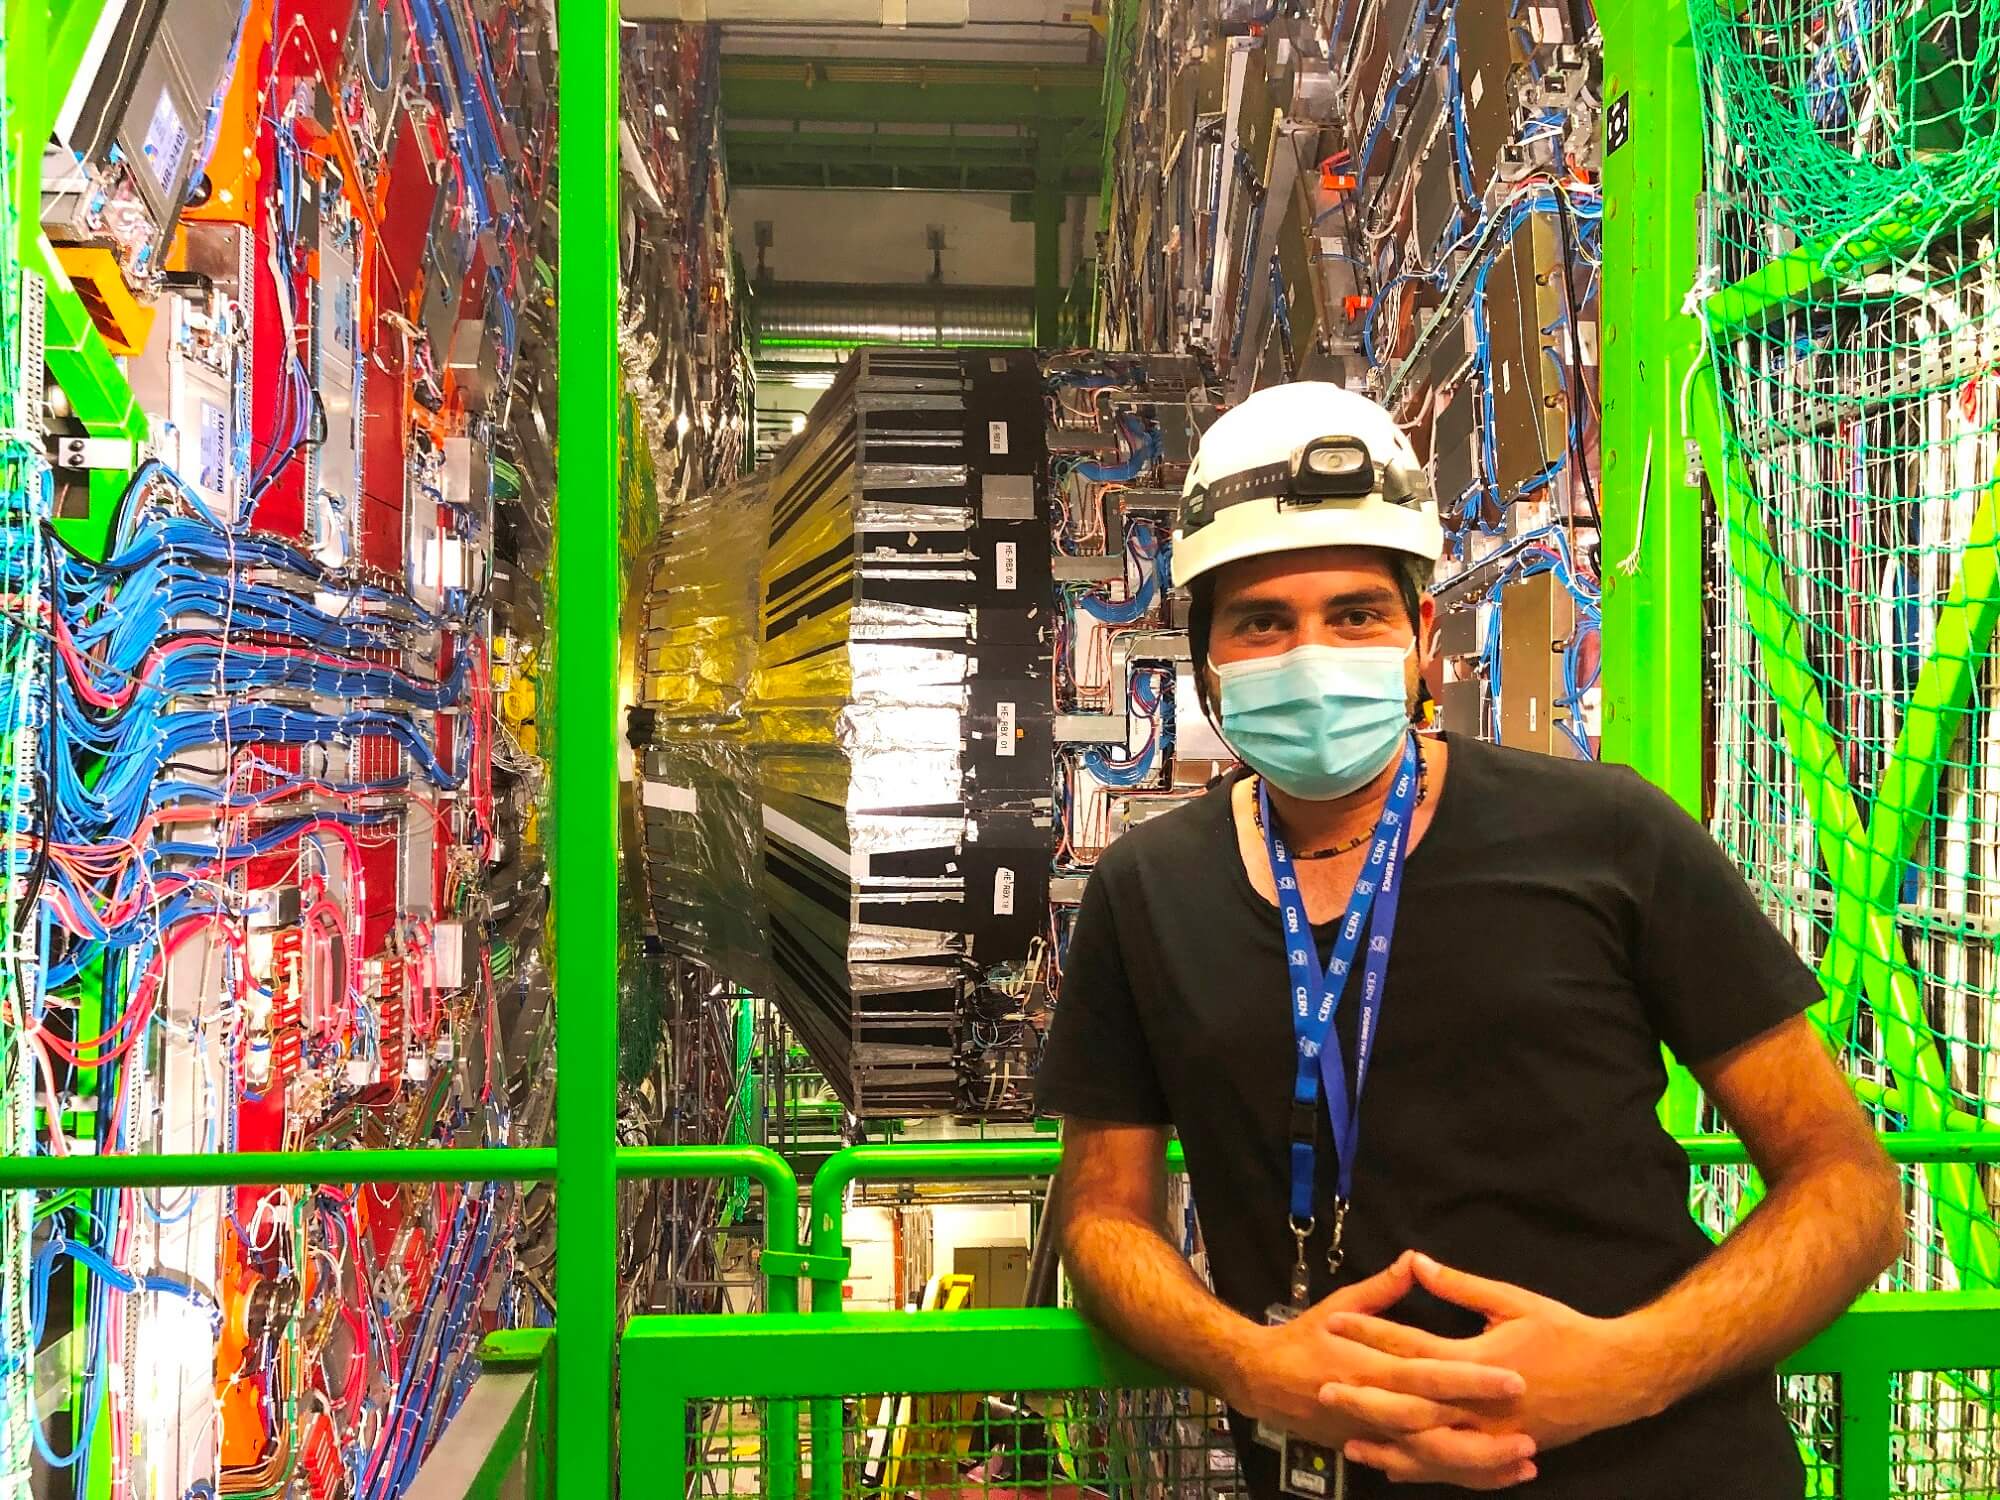 Yakın Doğu Üniversitesi’nden Doç. Dr. İlker Özşahin, CERN’de Yürütülen Altı Deneyden Biri Olan Compact Muon Selenoid (CMS) Ekibinde Ülkemizi Başarıyla Temsil Ediyor